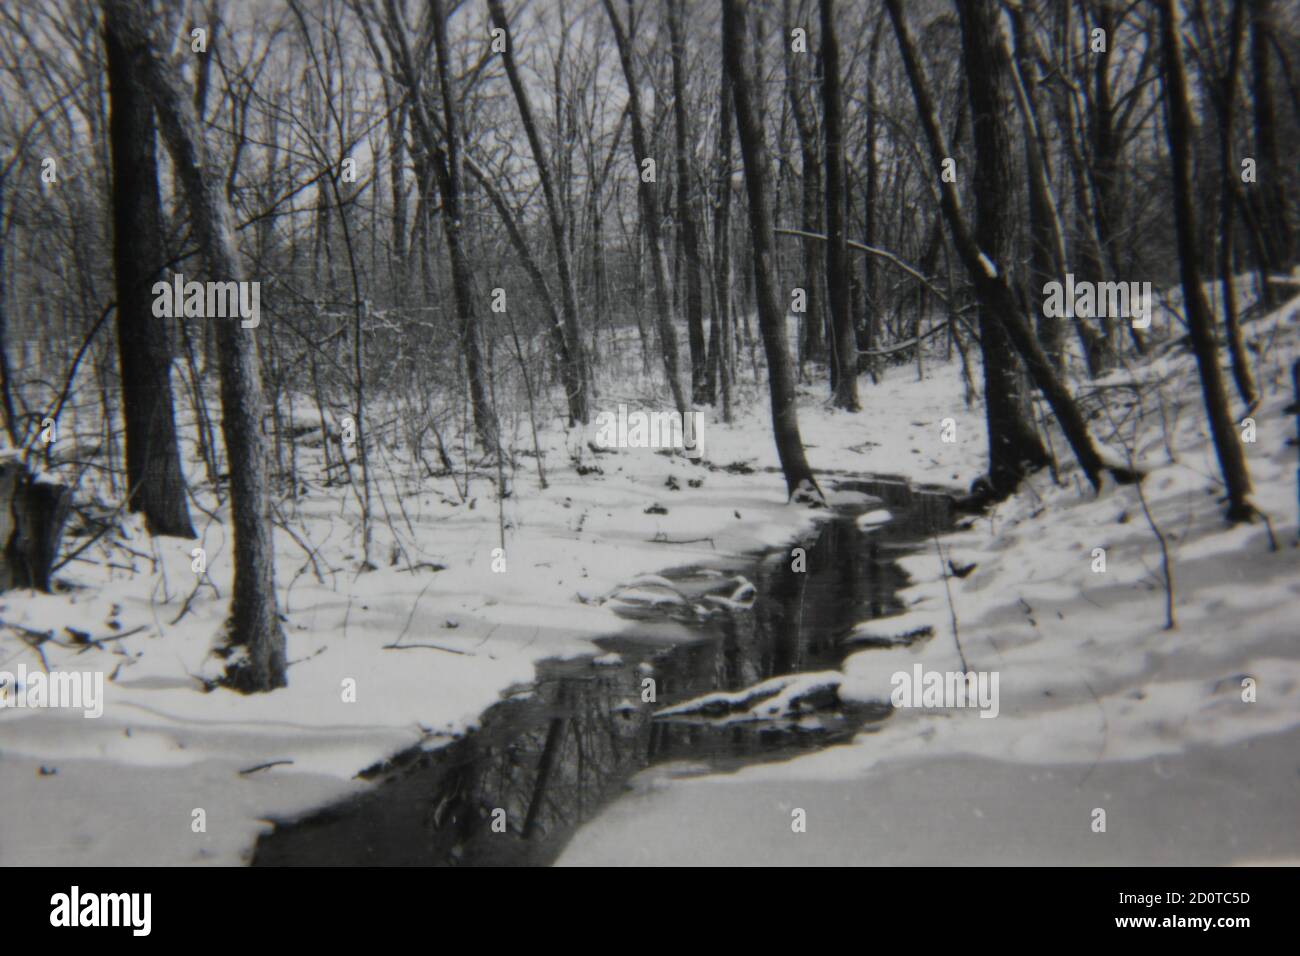 Fotografía en blanco y negro de la época de los años 70 de un paisaje nevado de invierno en las profundas maderas y lejos de todo. Foto de stock